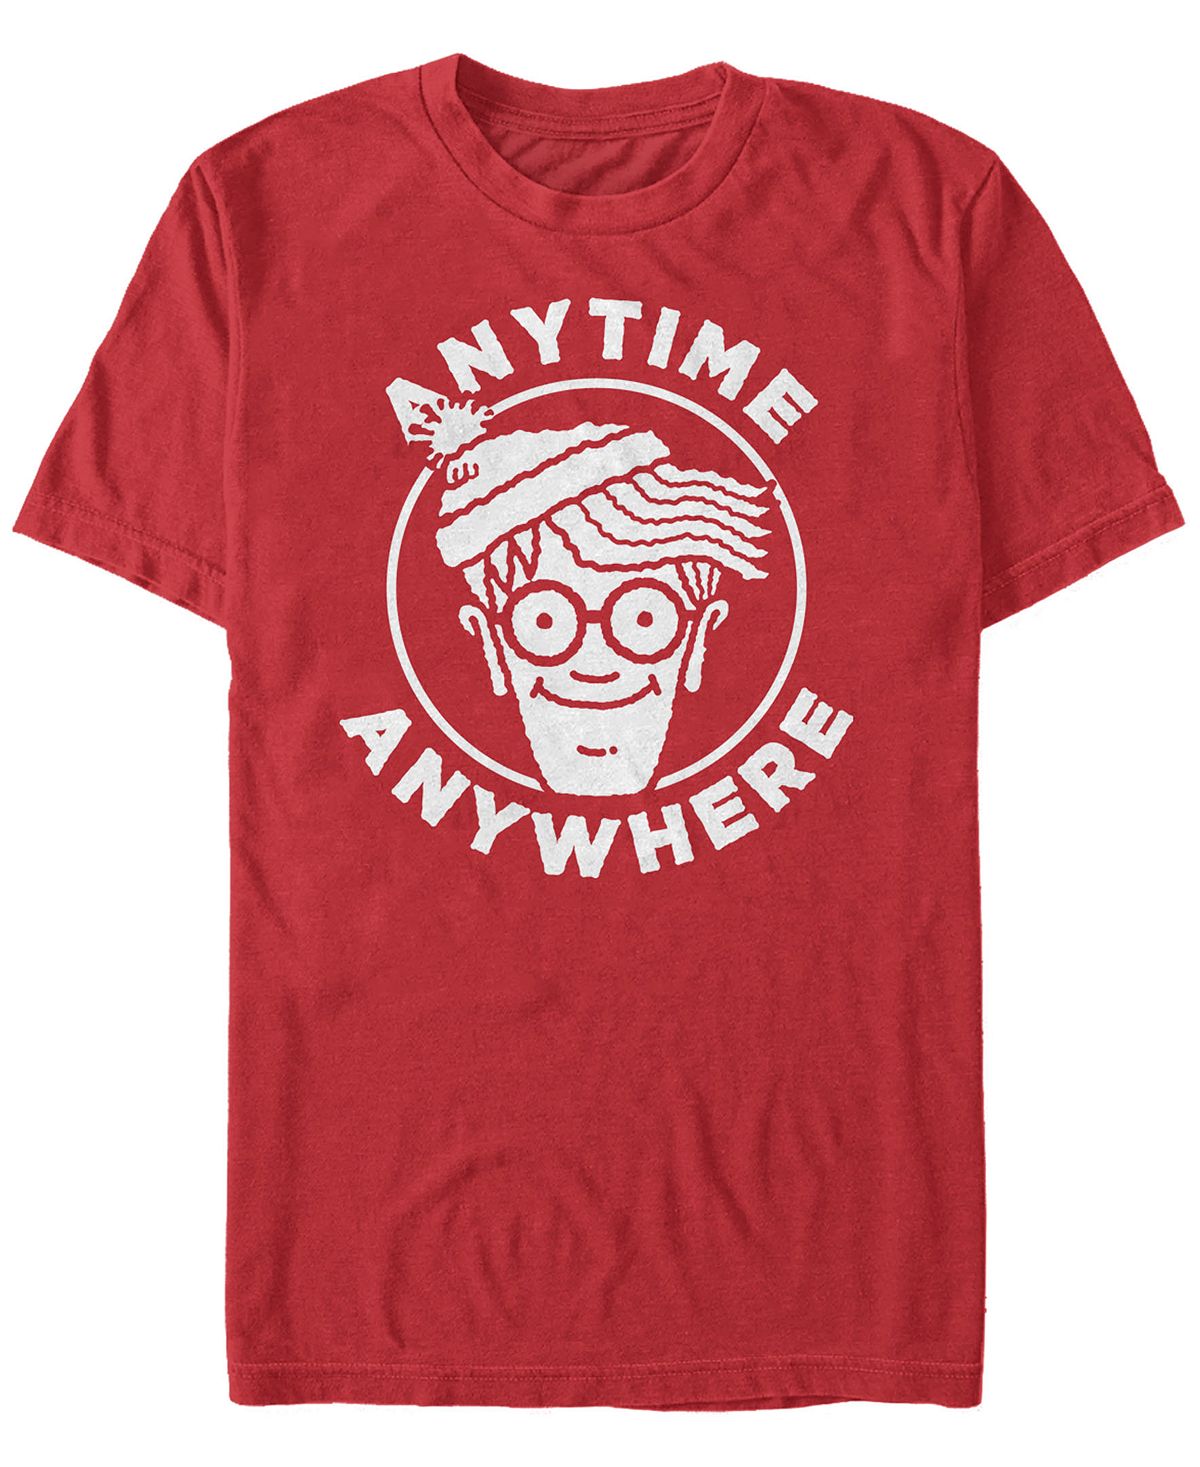 Мужская футболка с коротким рукавом и логотипом anytime anywhere с логотипом where's waldo Fifth Sun, красный